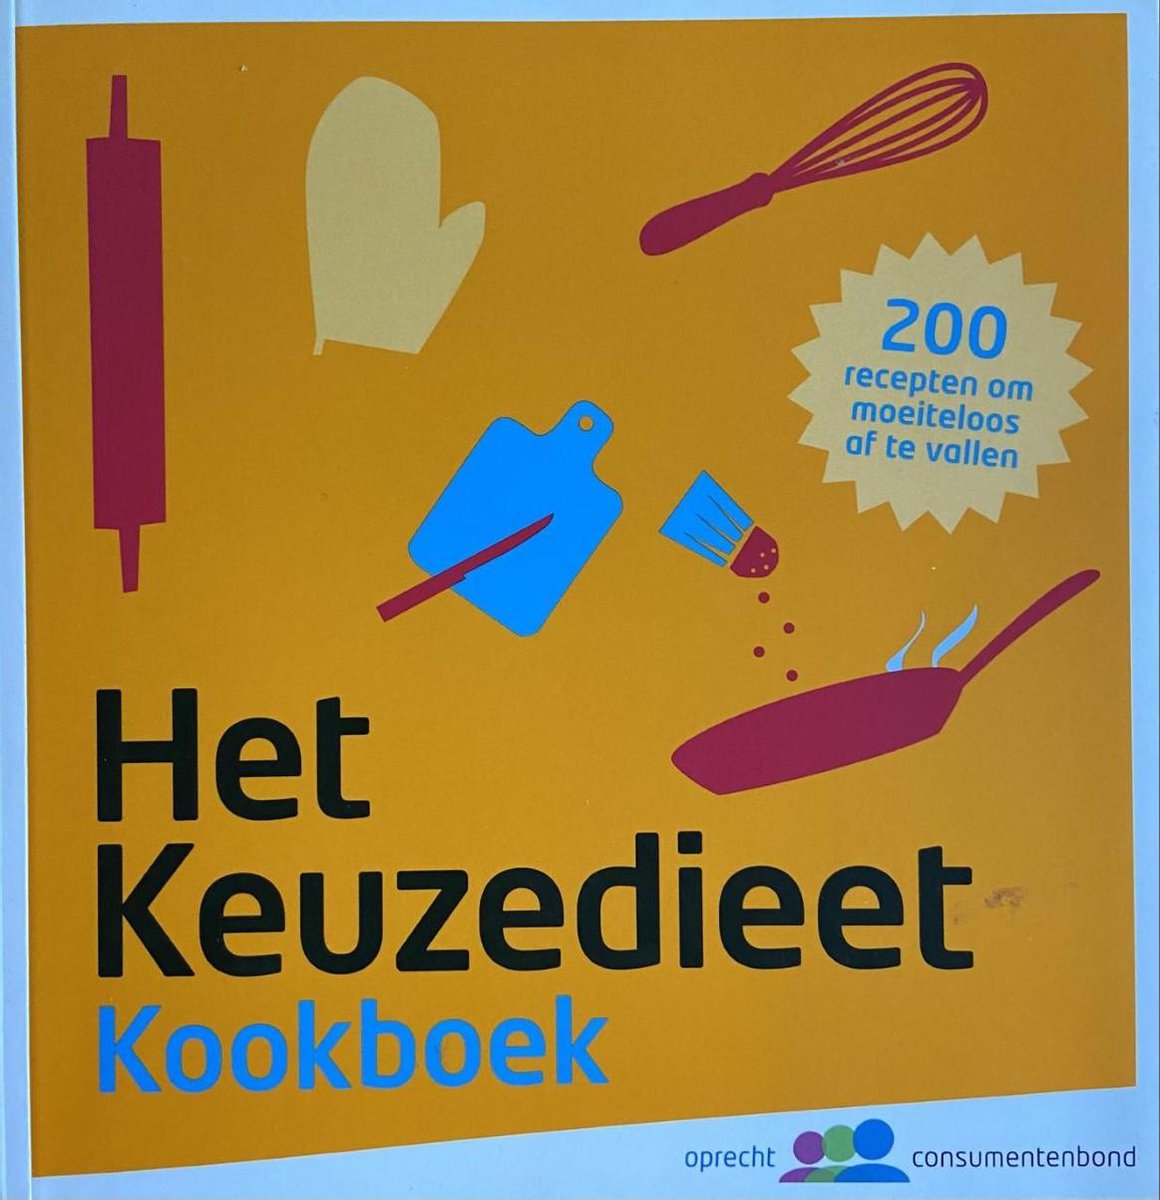 Het keuzedieet kookboek